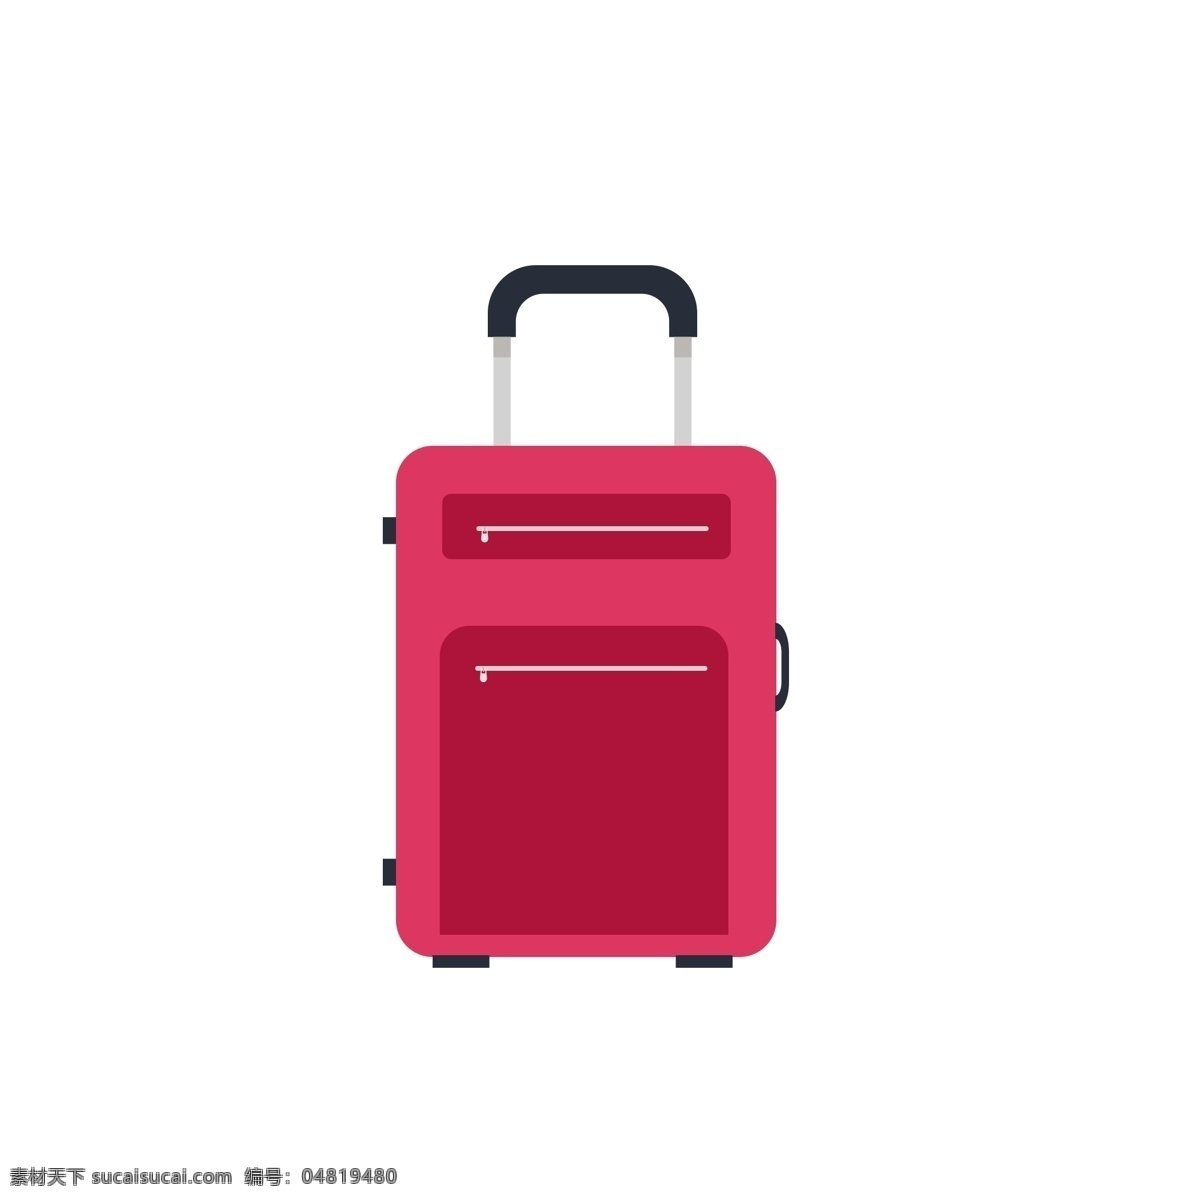 旅行箱 行李箱 拉杆 便携 箱子 红色 方便 拉链 简单